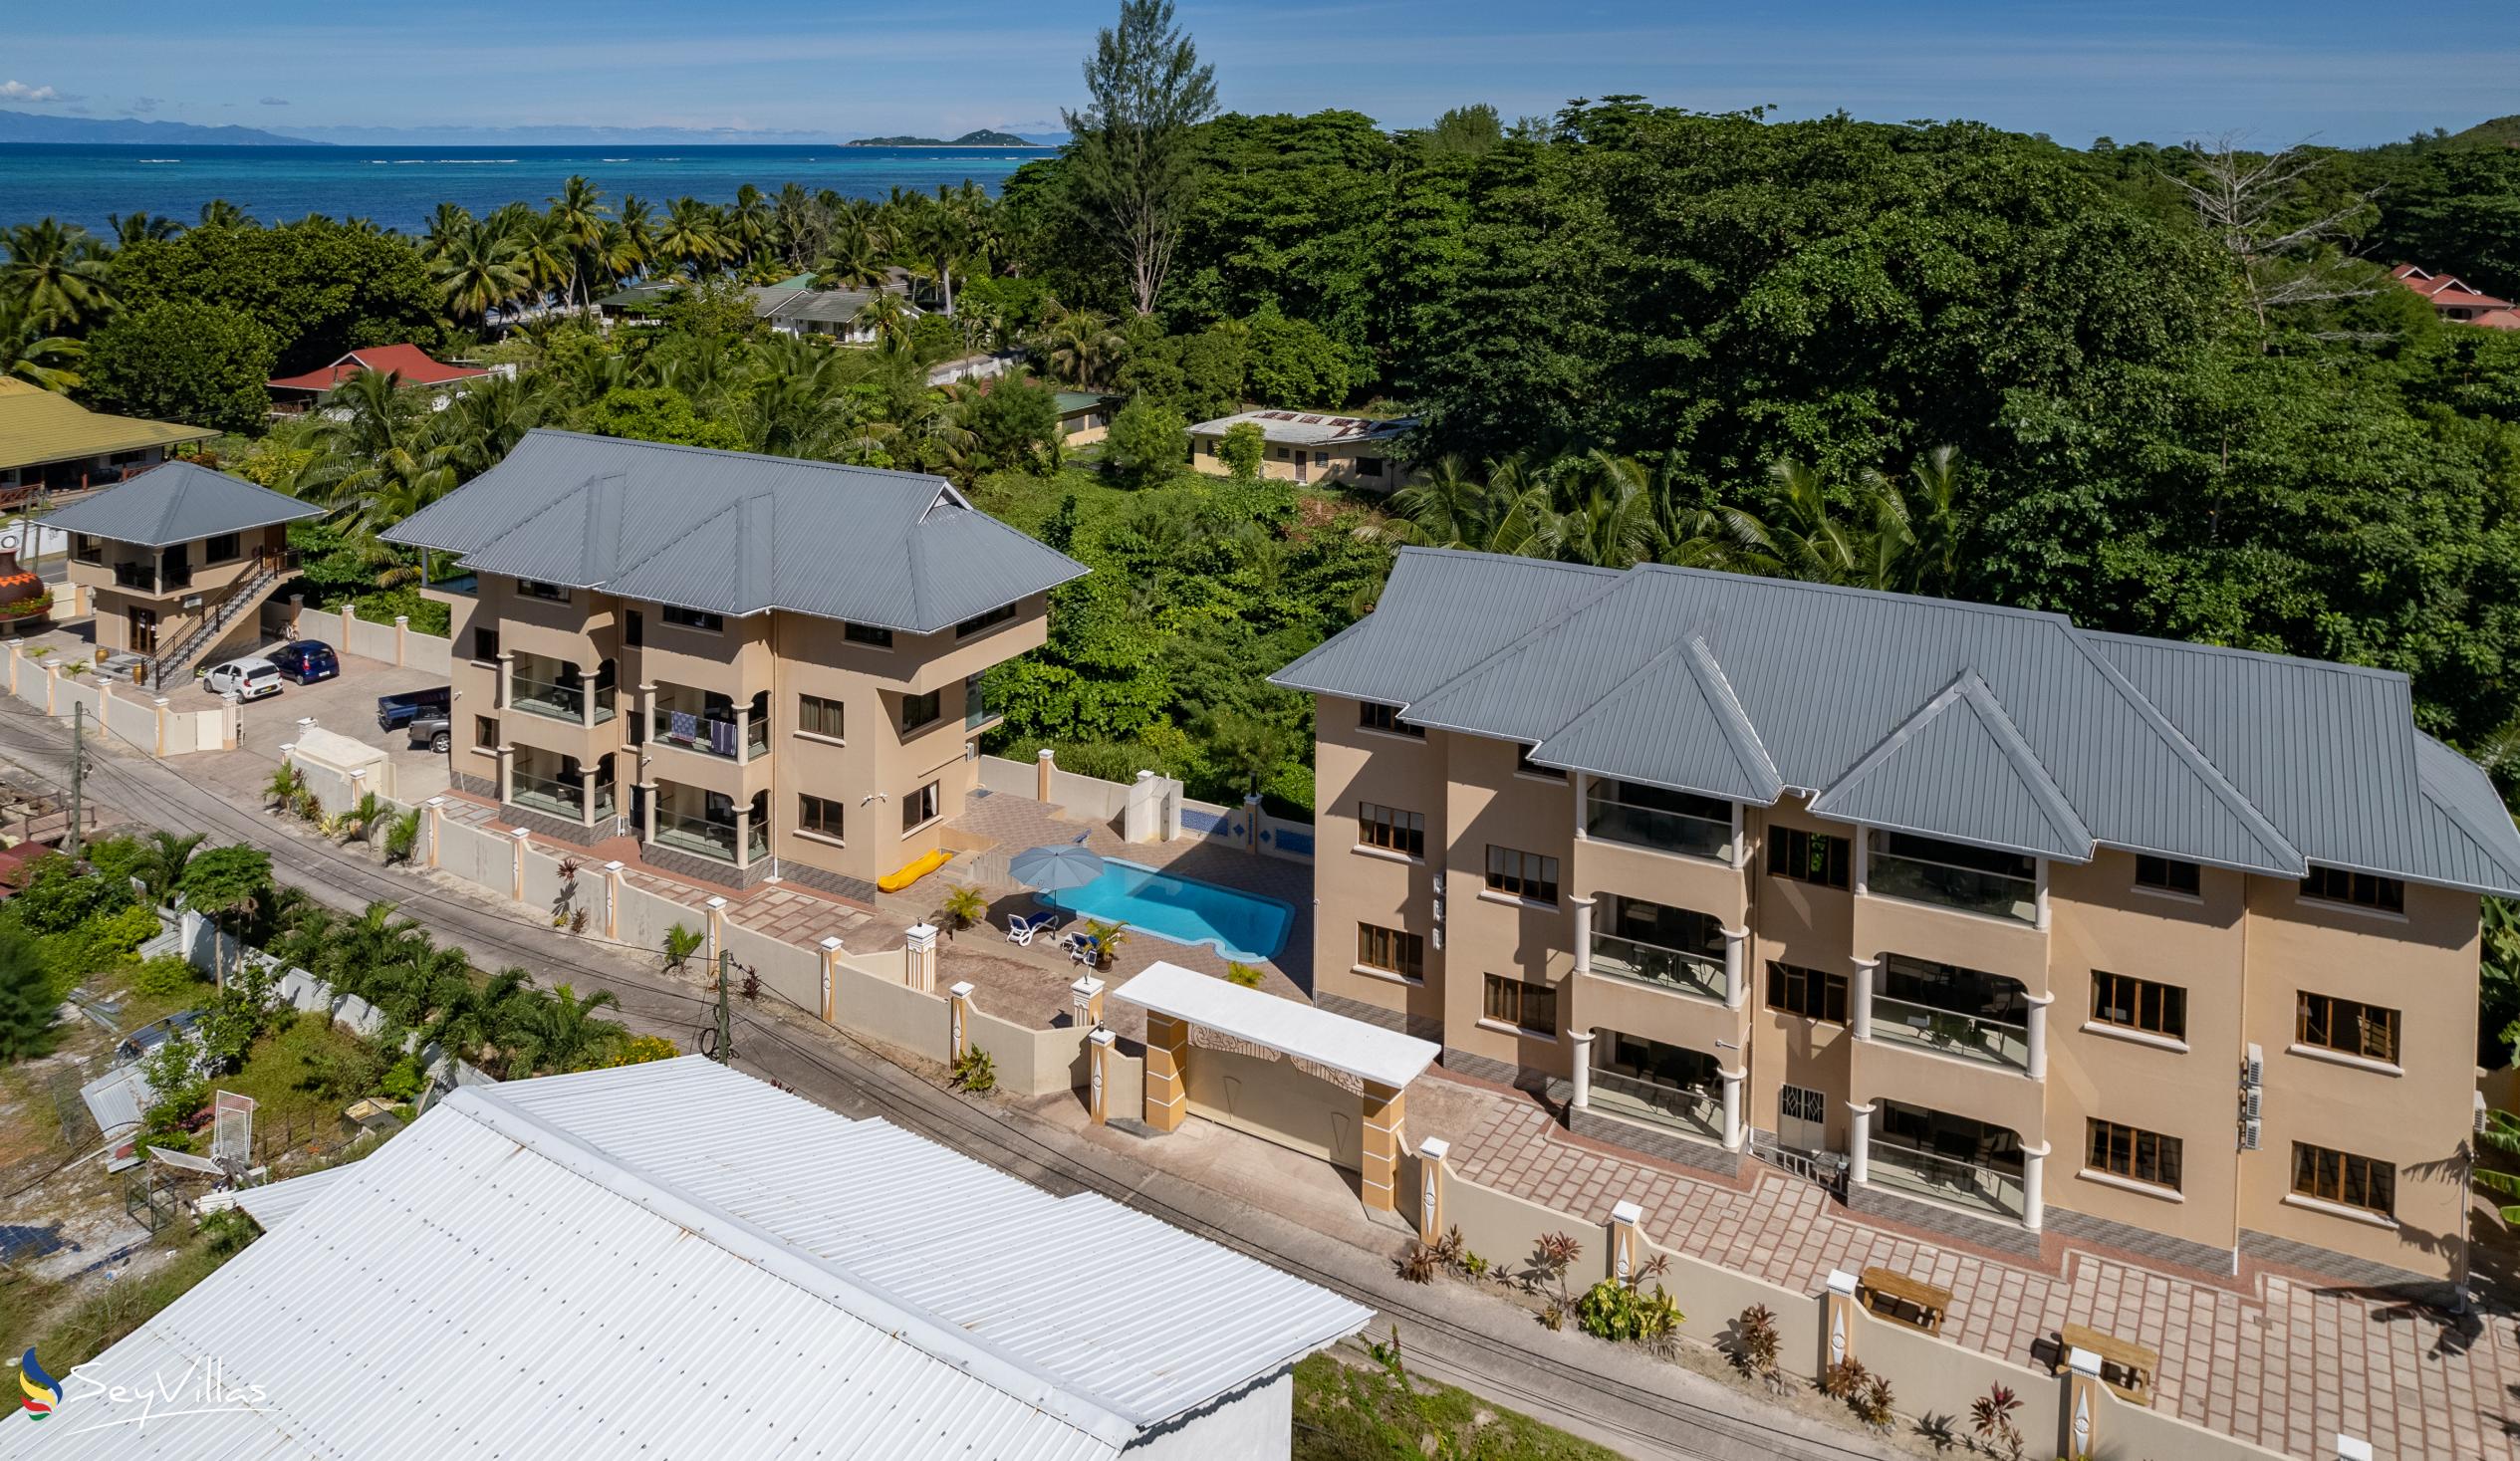 Foto 12: Stone Self Catering Apartments - Aussenbereich - Praslin (Seychellen)